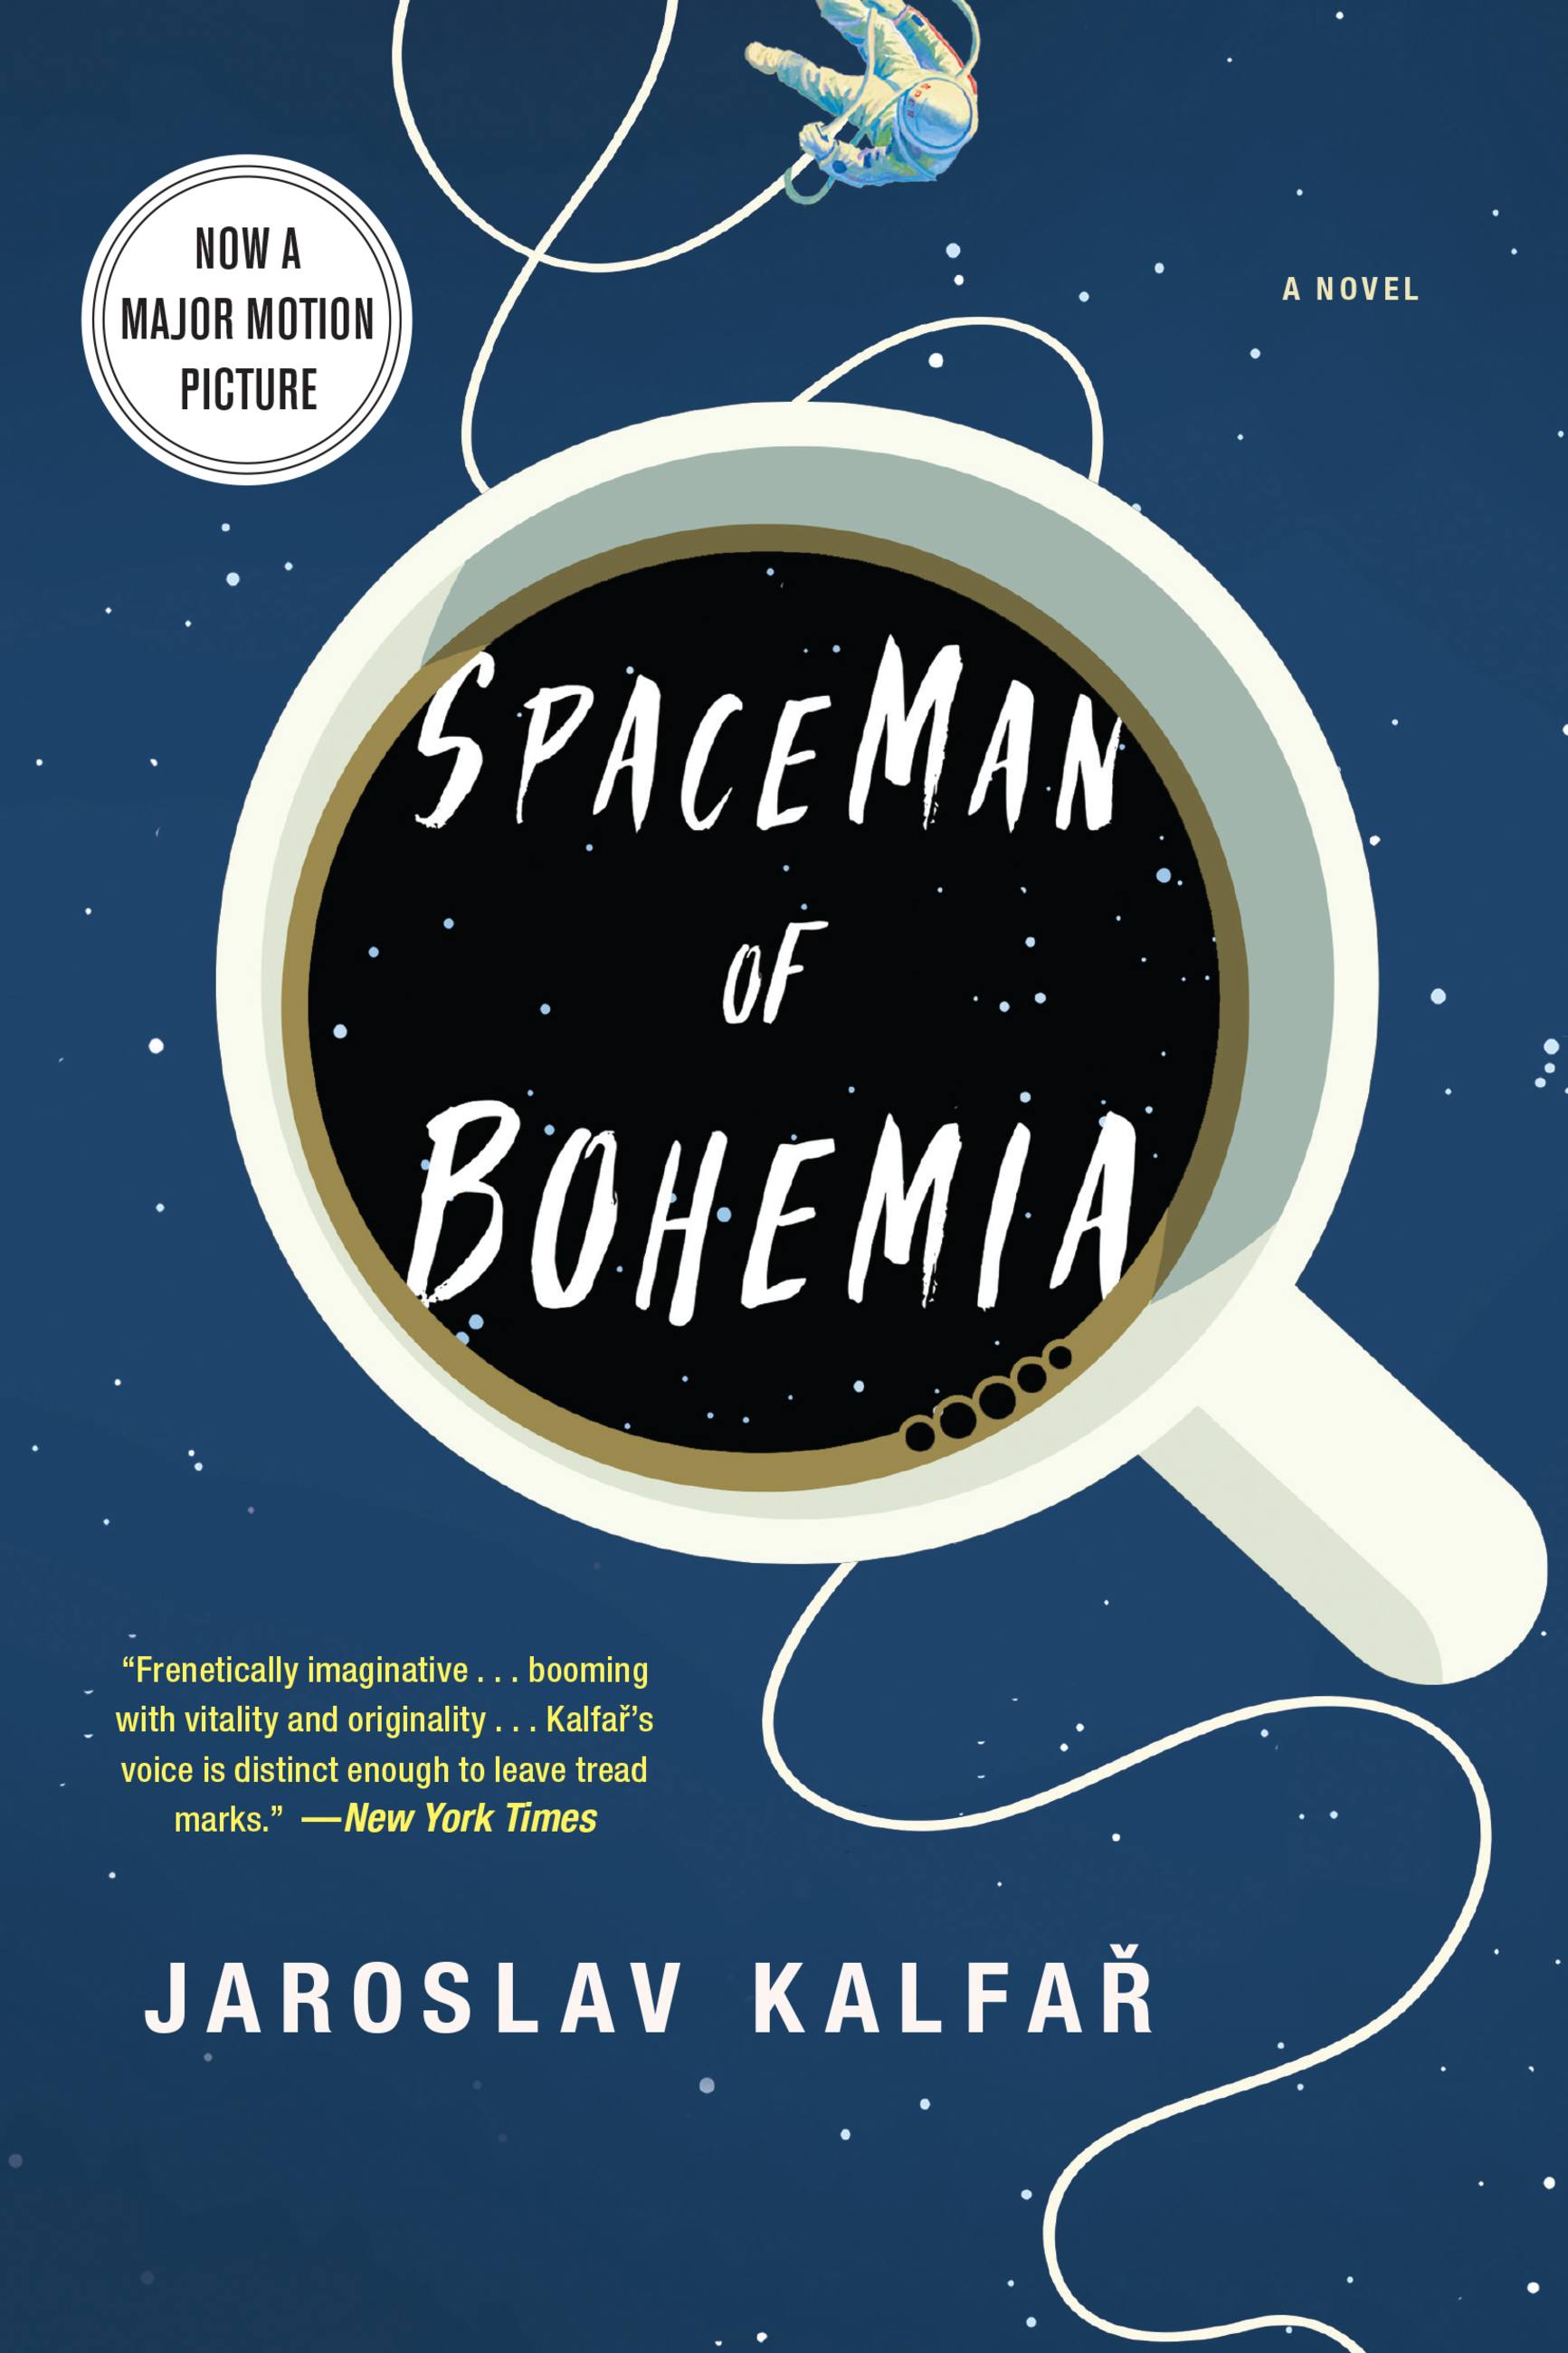 Spaceman of Bohemia by Jaroslav Kalfar Hachette Book Group pic